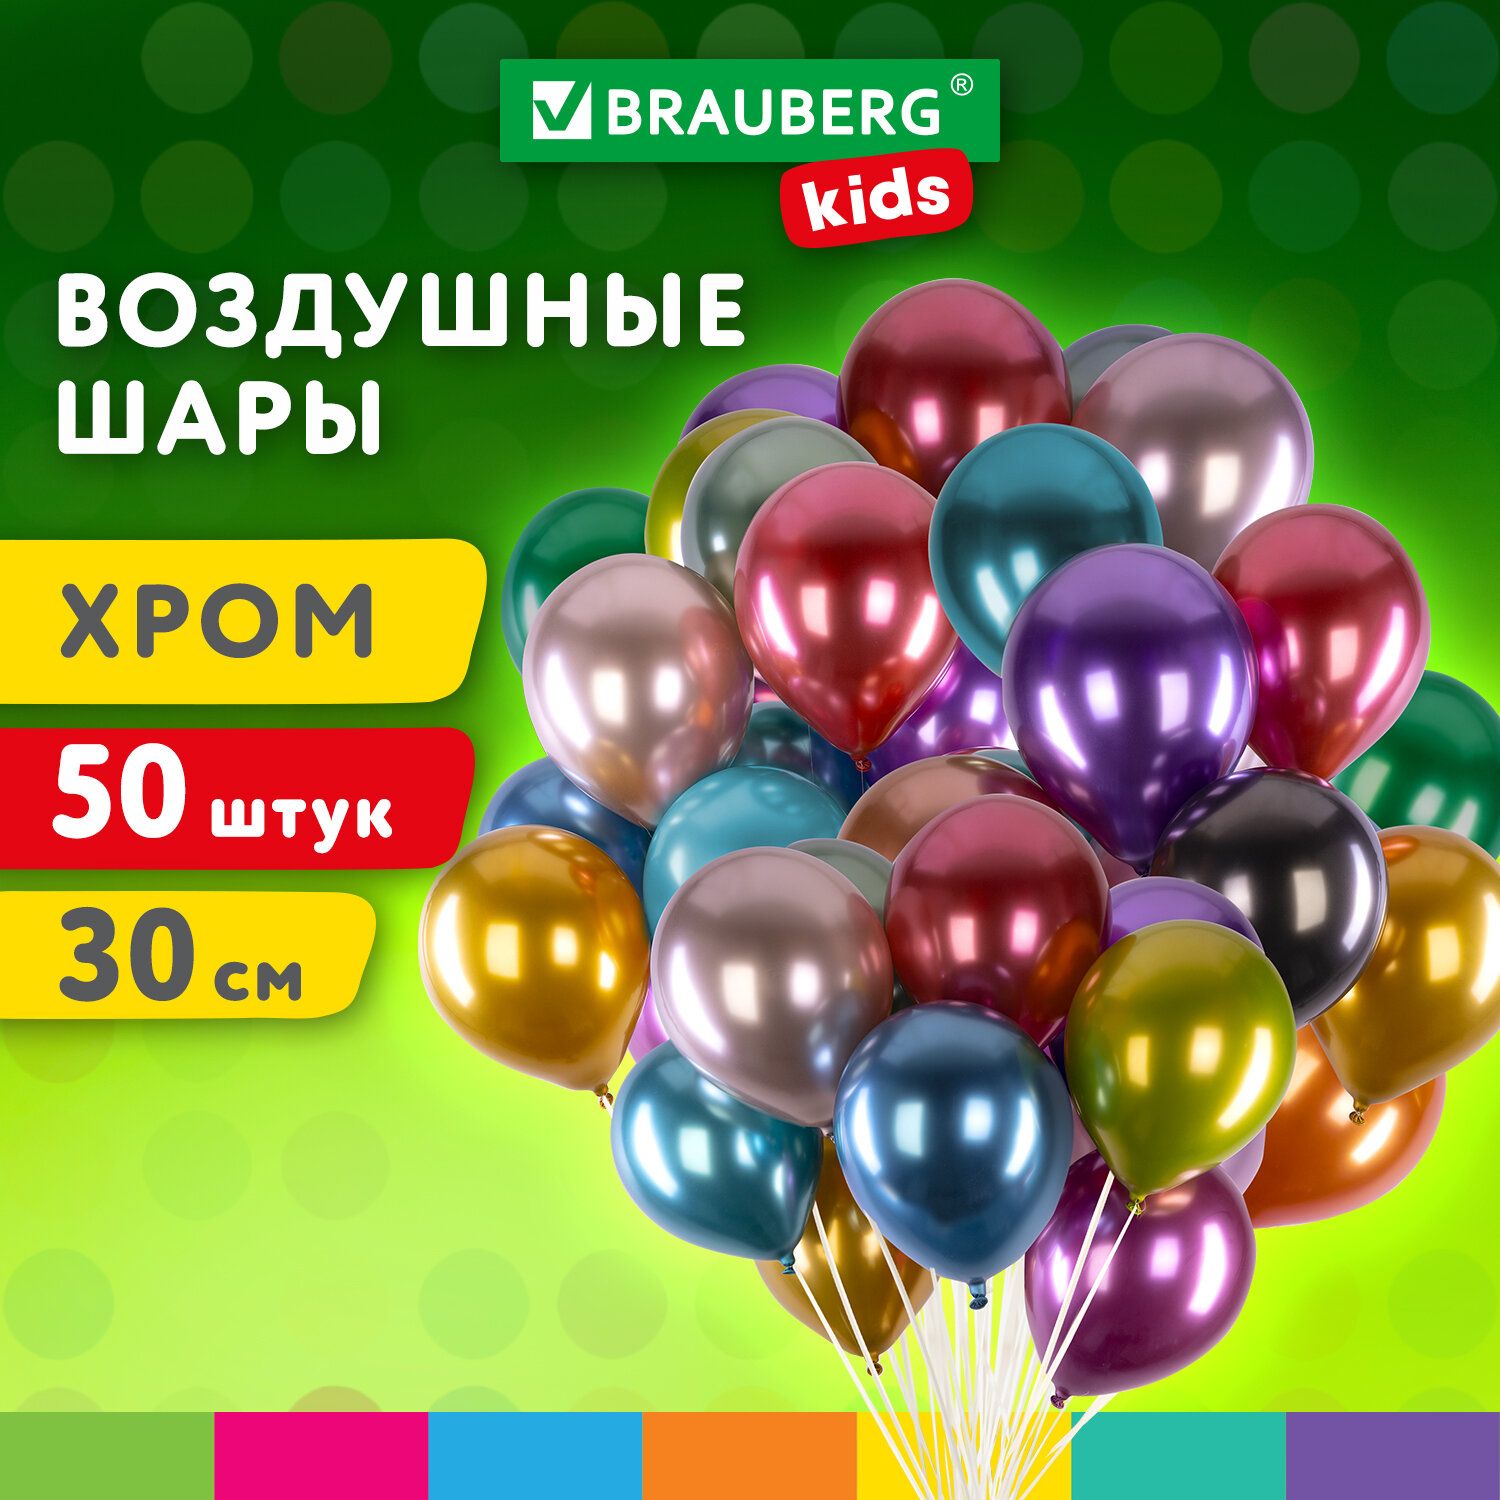 Шарики воздушные Brauberg Kids 591884 набор на день рождения, для фотозоны, 30 см, 50 штук набор воздушных шаров для оформления фотозоны